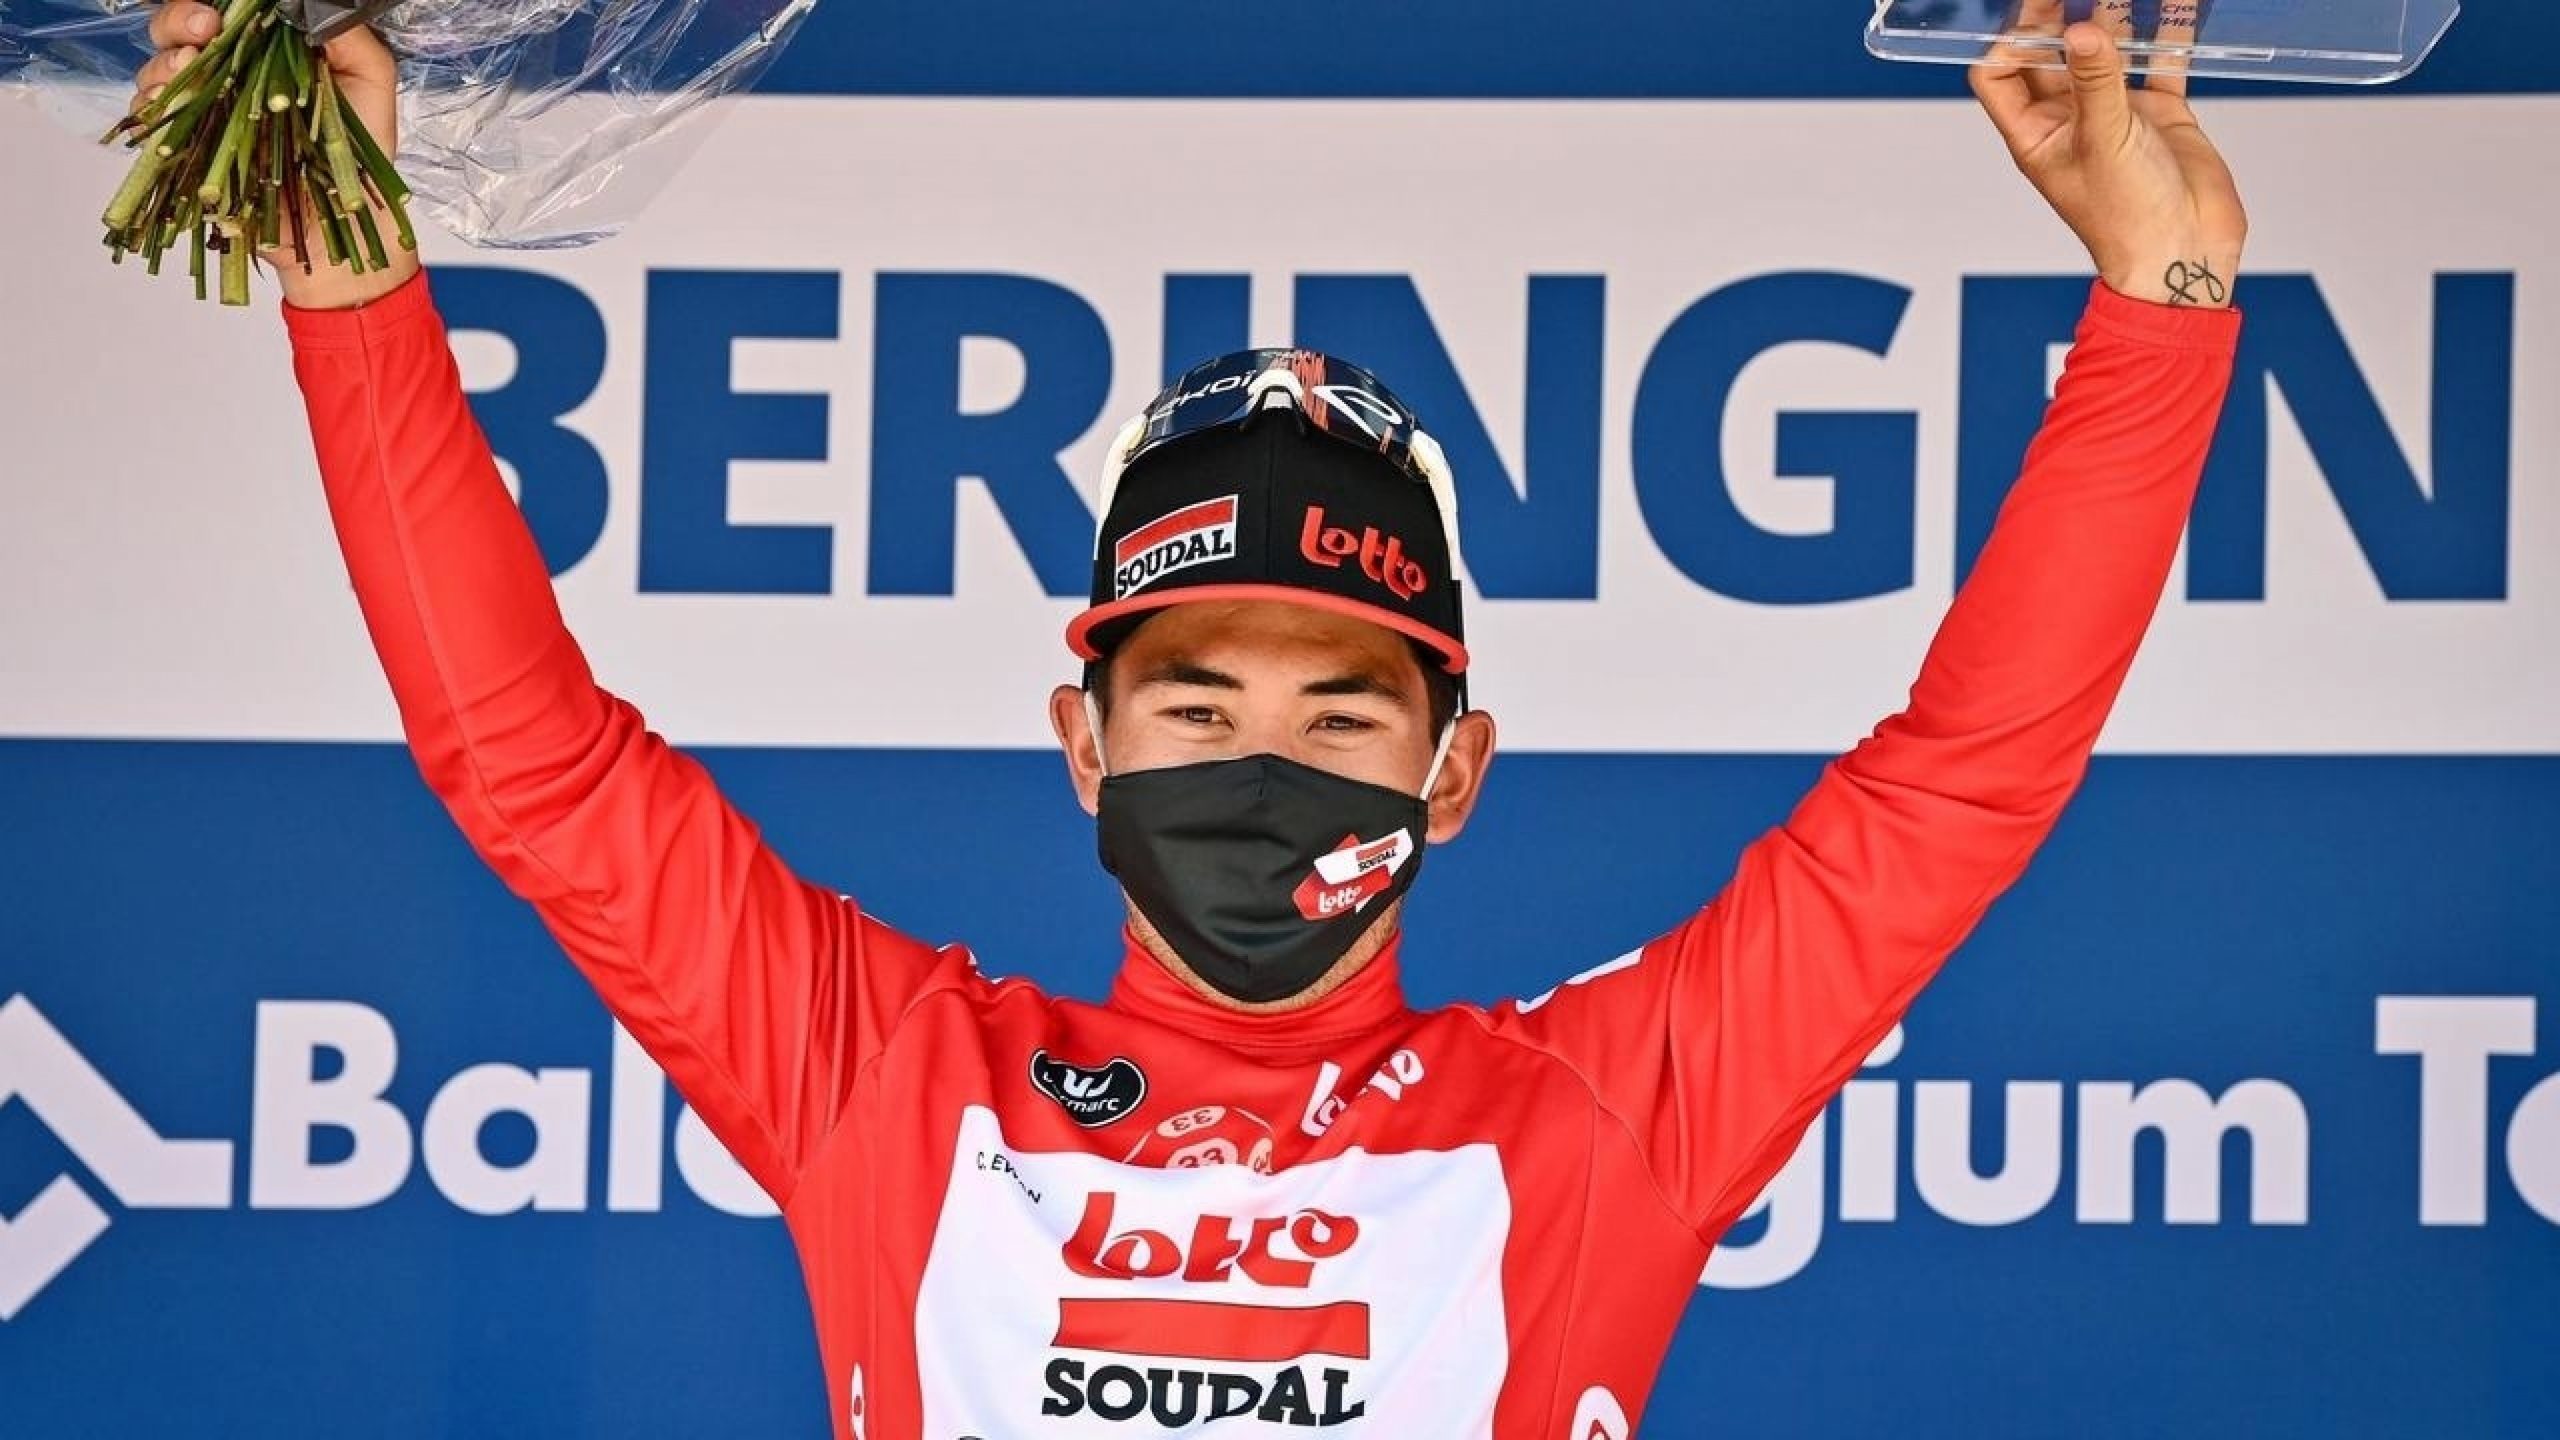 Australian Ewan named Lotto leader for Tour de France